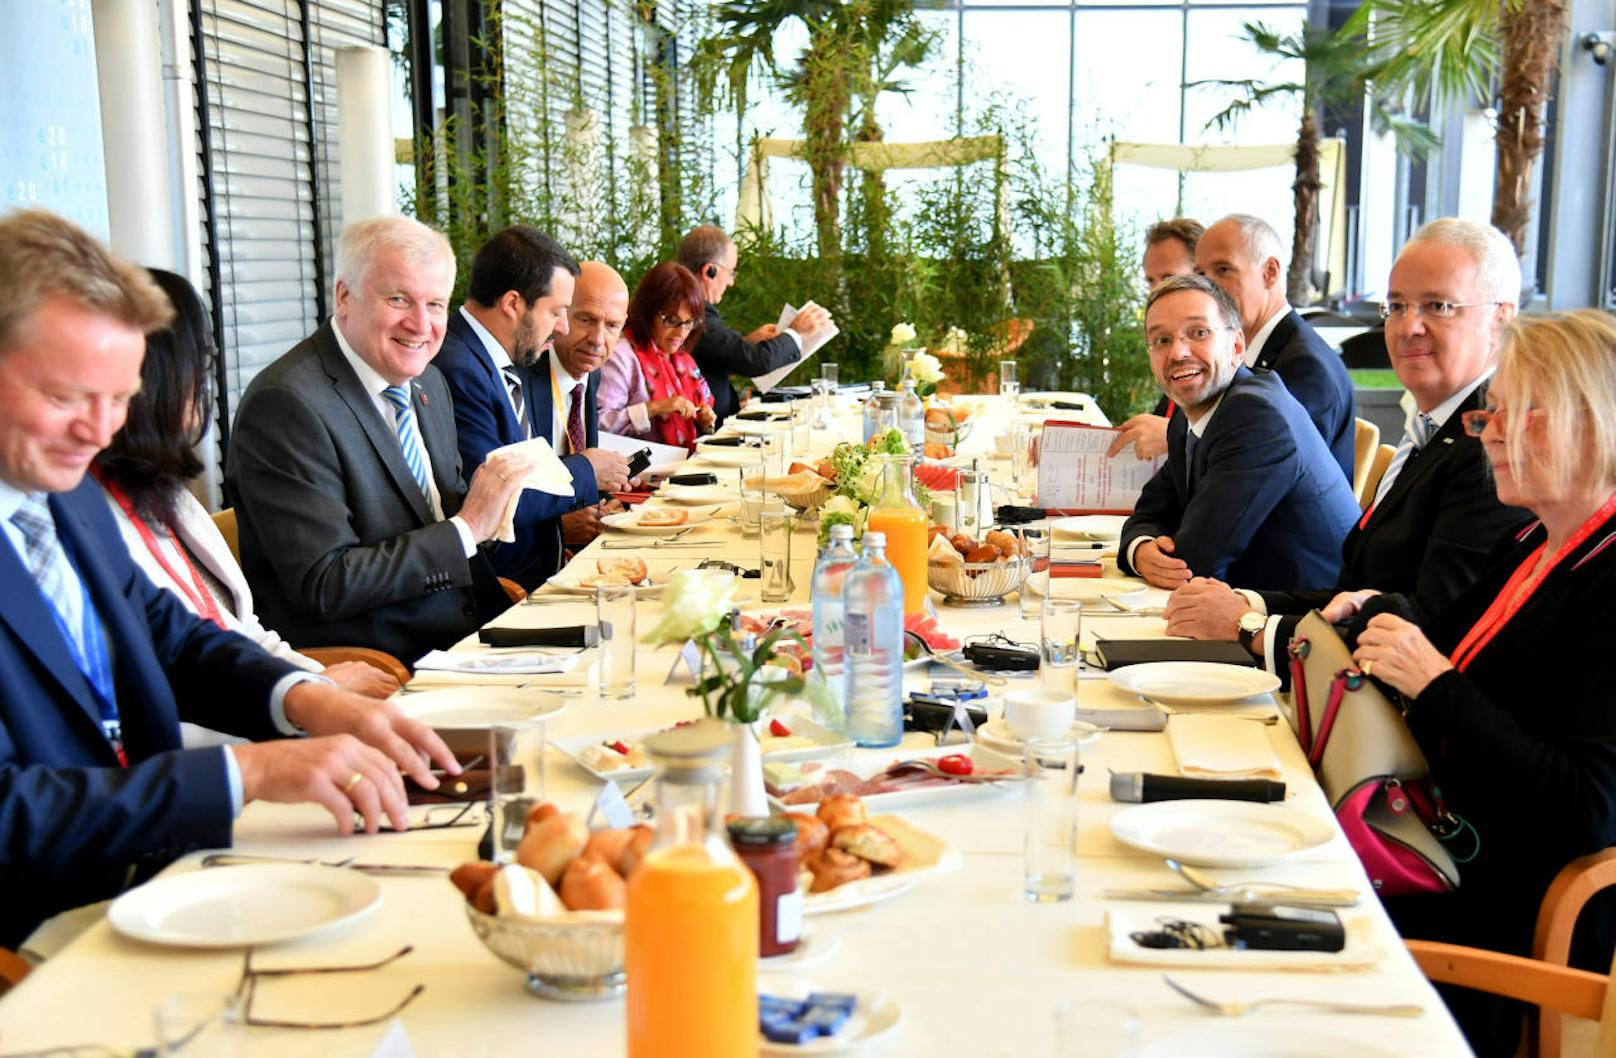 Beim Frühstück vor der nächsten Arbeitssitzung ist die Stimmung noch locker. Im Bild: Die Innenminister (v.l.) Horst Seehofer (GER), Matteo Salvini (ITA), Herbert Kickl (AUT) am Donnerstag, 12. Juli 2018.